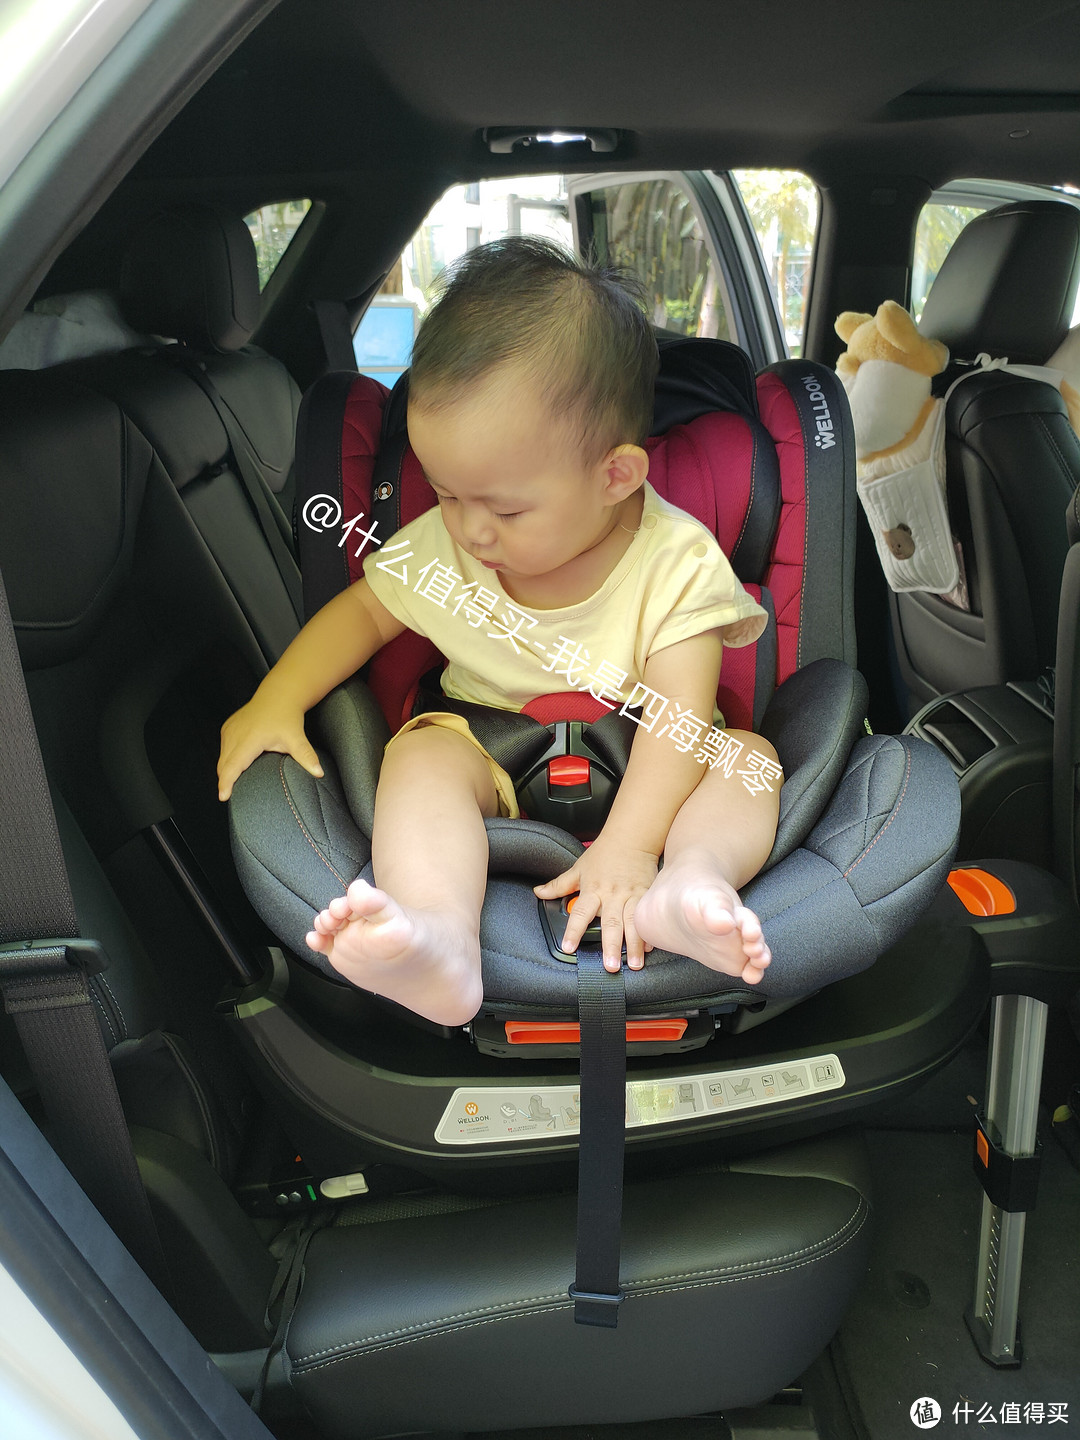 陪娃的快乐时光，安全呵护最重要：一个新晋奶爸选安全座椅的心路历程，惠尔顿安全座椅开箱和使用体验